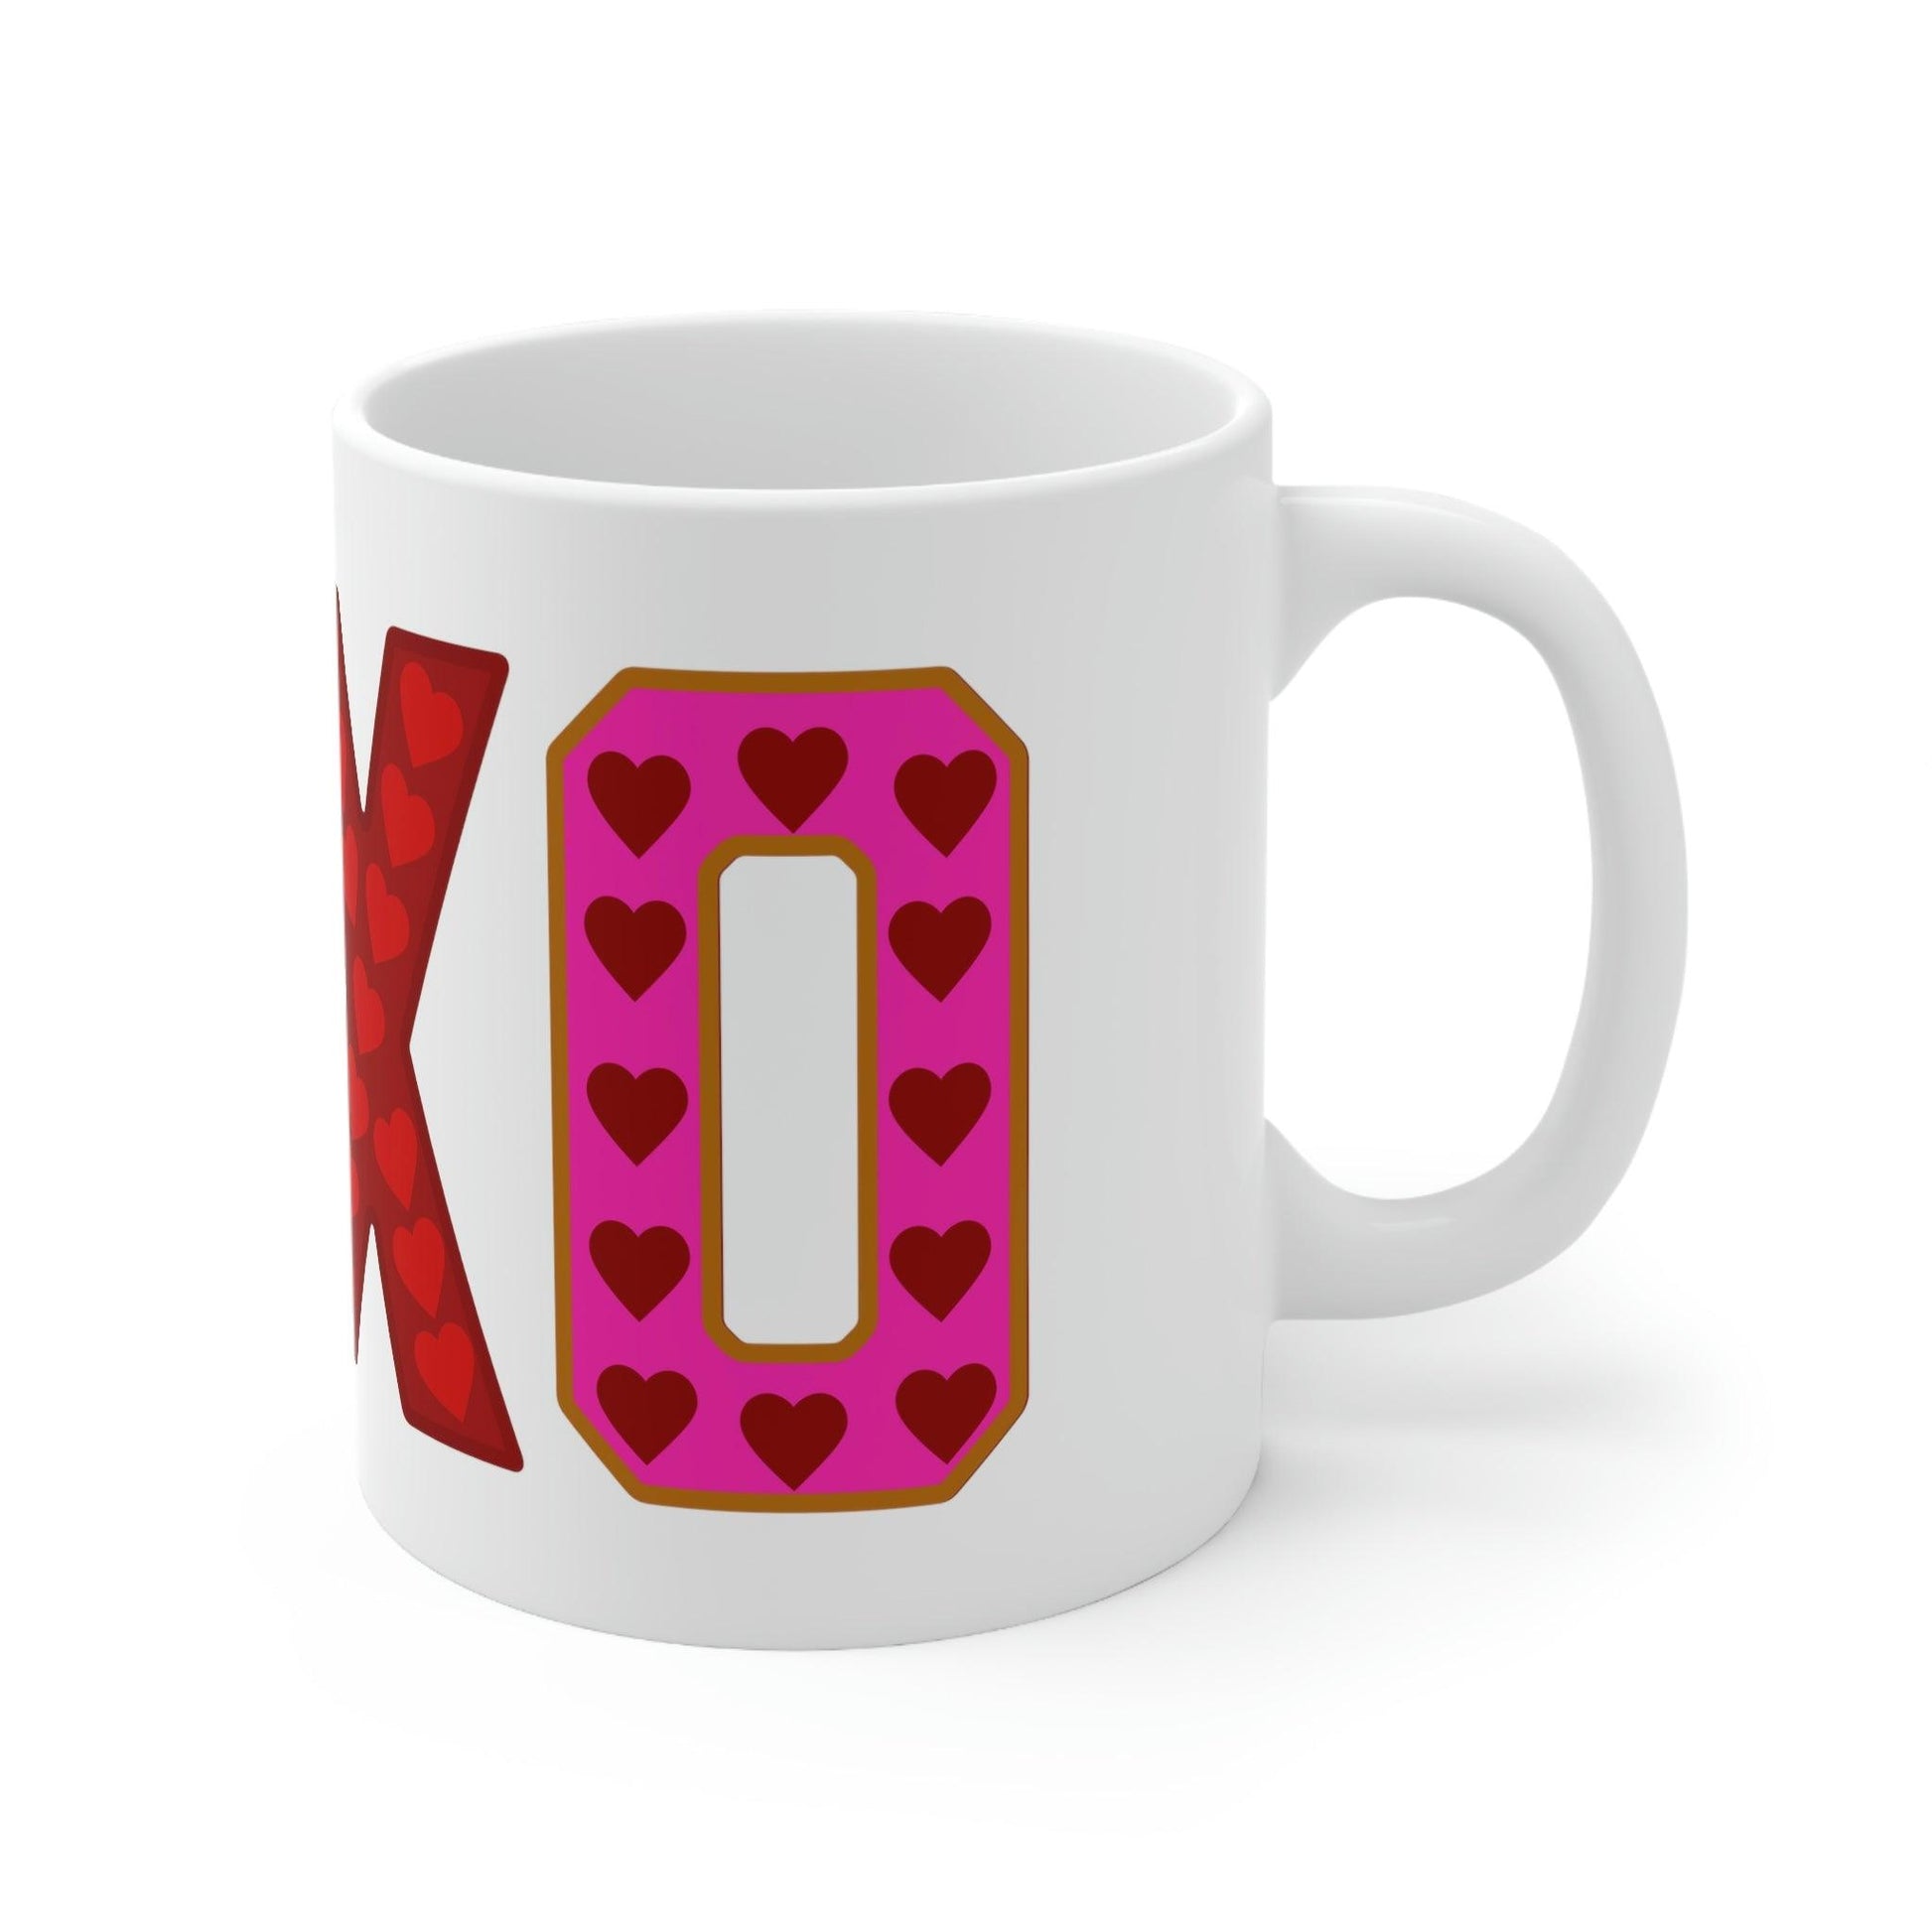 XOXO Mug - Love Mug - Giftsmojo